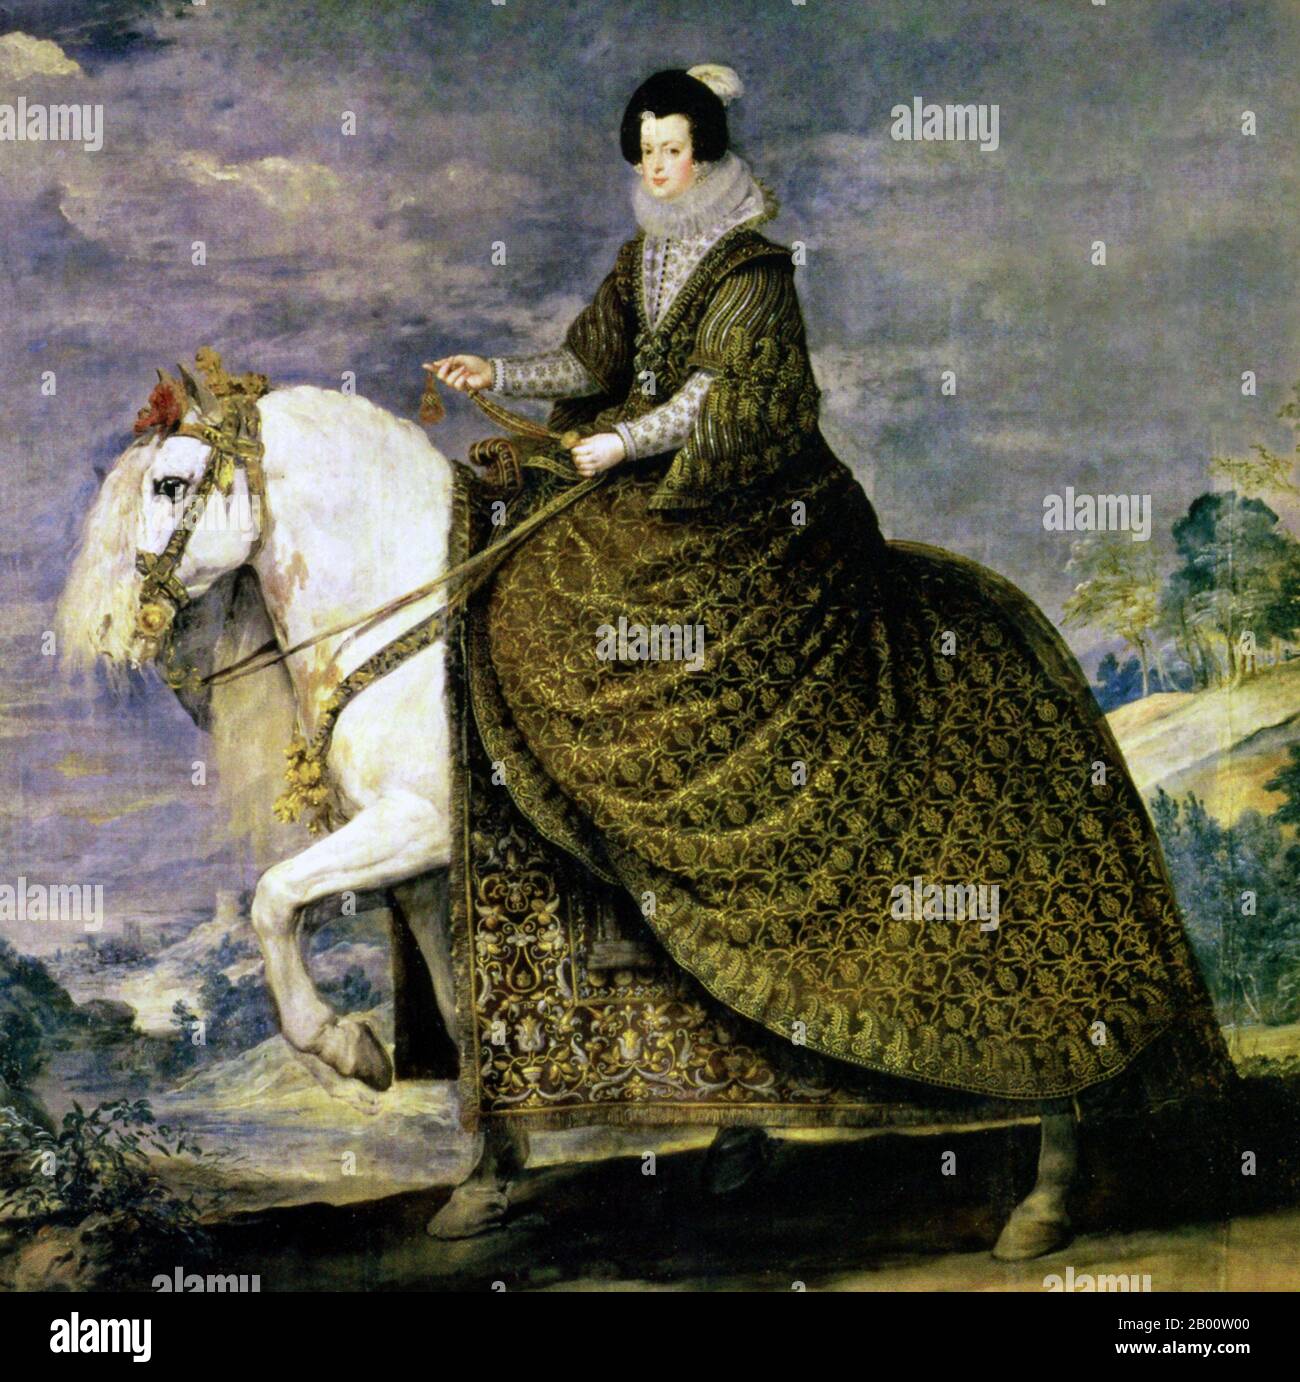 Espagne/ France/ Maghreb: Isabel de Bourbon est représentée sur un cheval andalou. Peinture à l'huile sur toile par Diego Velazquez (1599-1660), c. 1635. Isabella de Bourbon/Elisabeth de France (1602-1644) était la reine Consort d'Espagne et du Portugal, et était mariée au roi Philippe V d'Espagne. Elle a brièvement servi de régente pendant la révolte catalane en 1640-1642, et une fois de plus en 1643-1644. Le cheval andalou était un croisement de la Barbe nord-africaine et du cheval espagnol, qui a été développé au tribunal d'Umayyad à Cordoue et était le mont préféré de beaucoup de royals européens. Banque D'Images